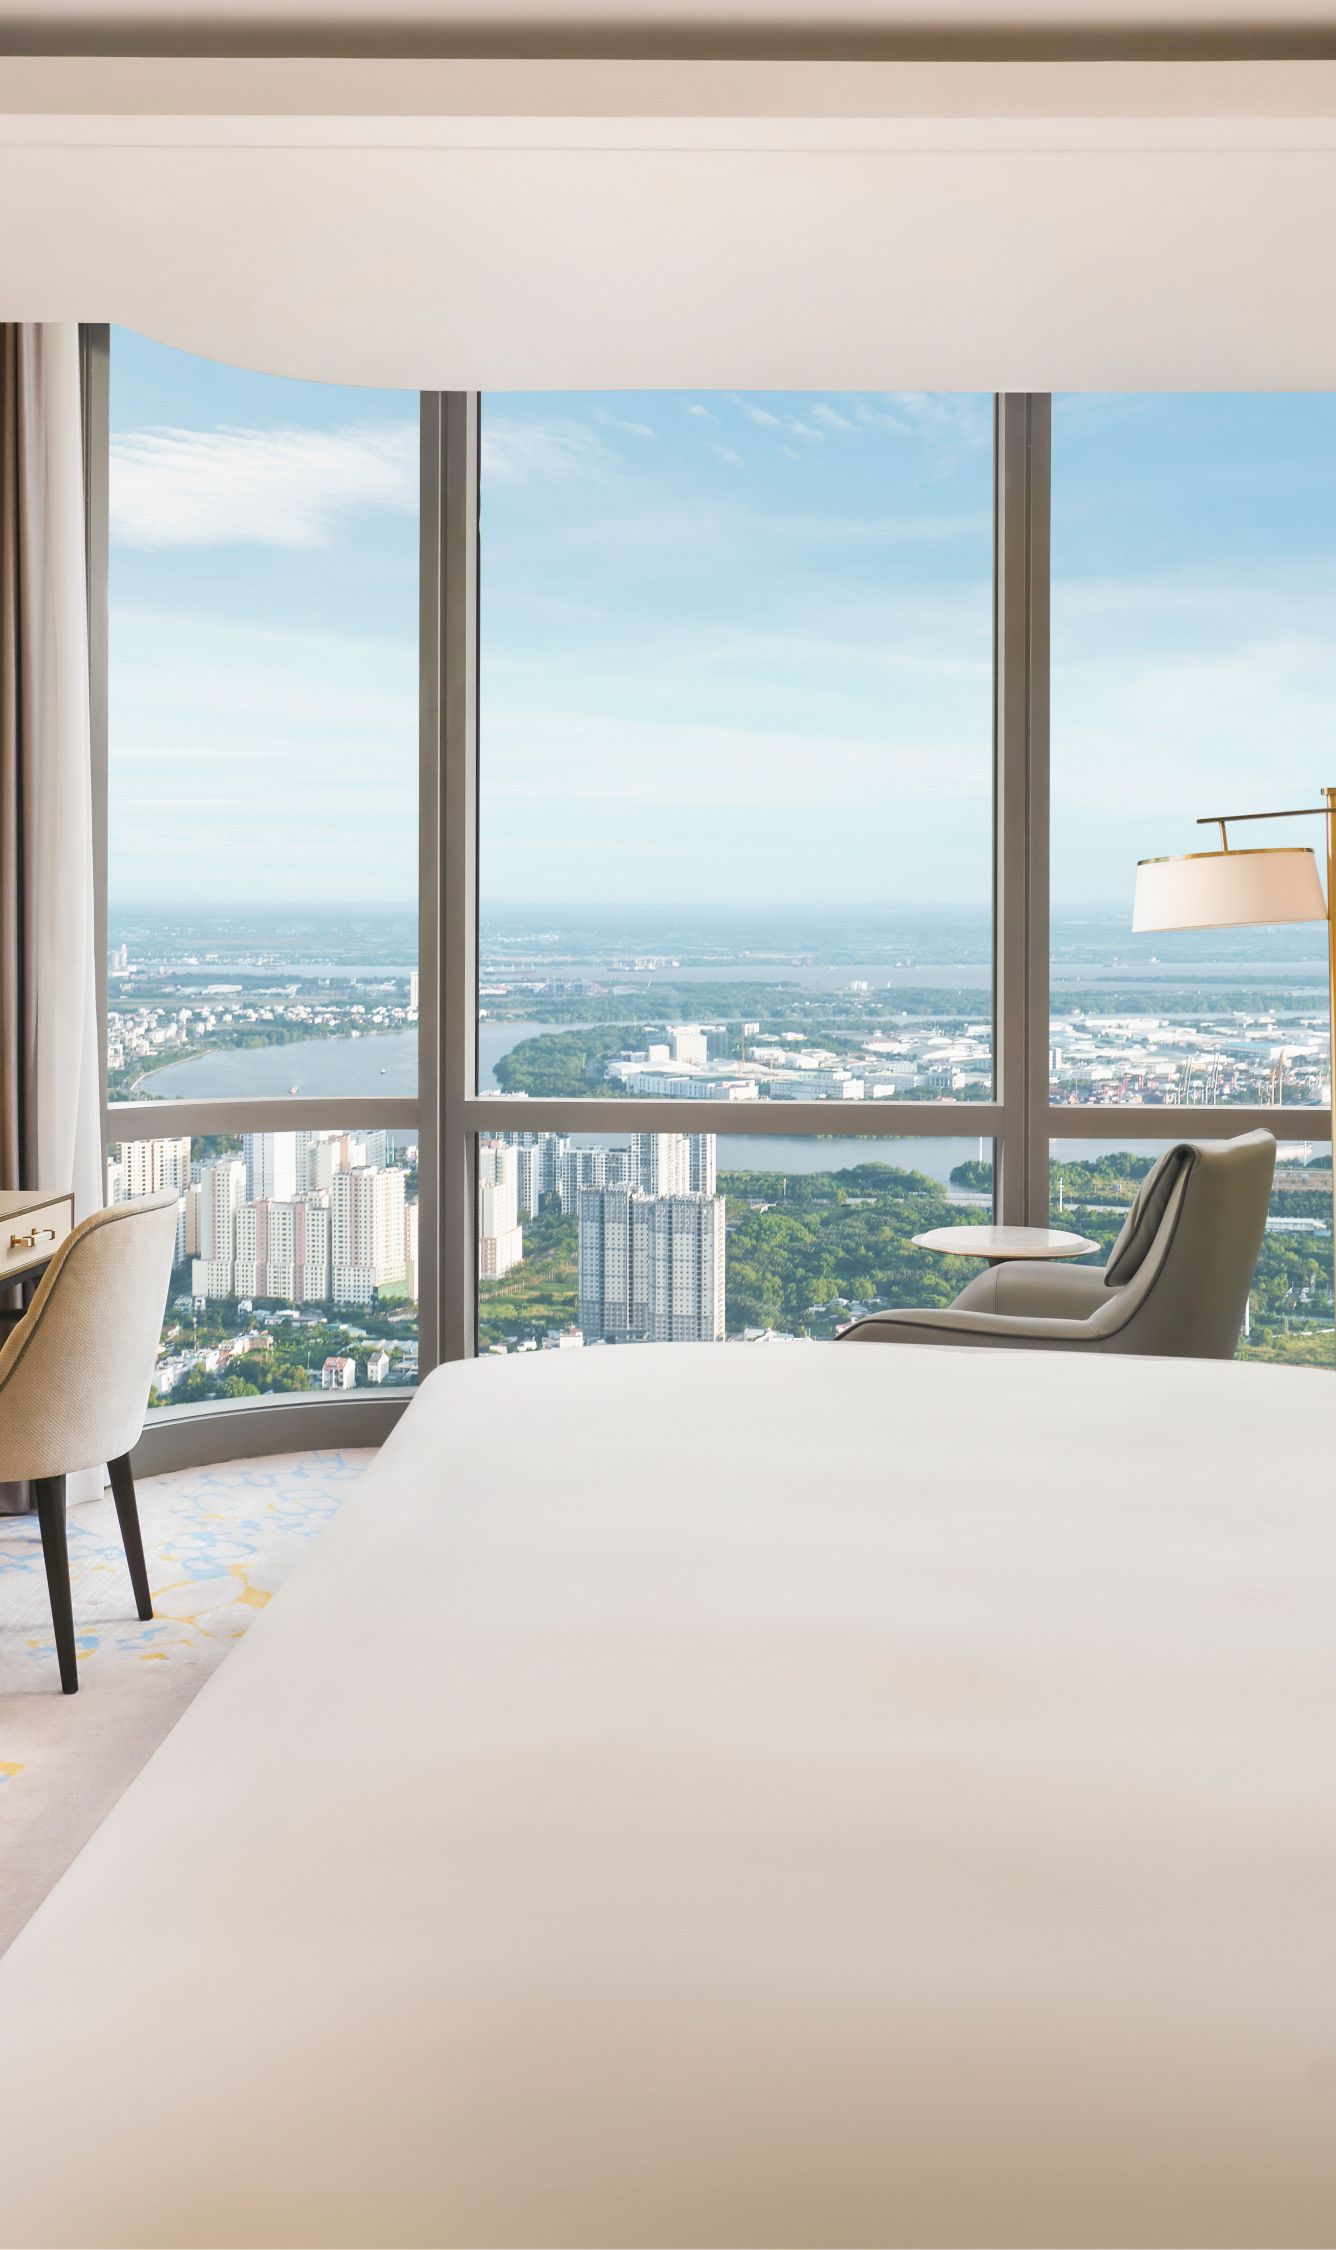 Khách sạn TP Hồ Chí Minh: Hãy khám phá một trong những khách sạn tiêu chuẩn cao nhất tại TP Hồ Chí Minh, với nhiều tiện nghi hiện đại và cảnh quan đẹp lung linh. Bạn sẽ được trải nghiệm một kỳ nghỉ đáng nhớ trong không gian sang trọng và thoải mái.